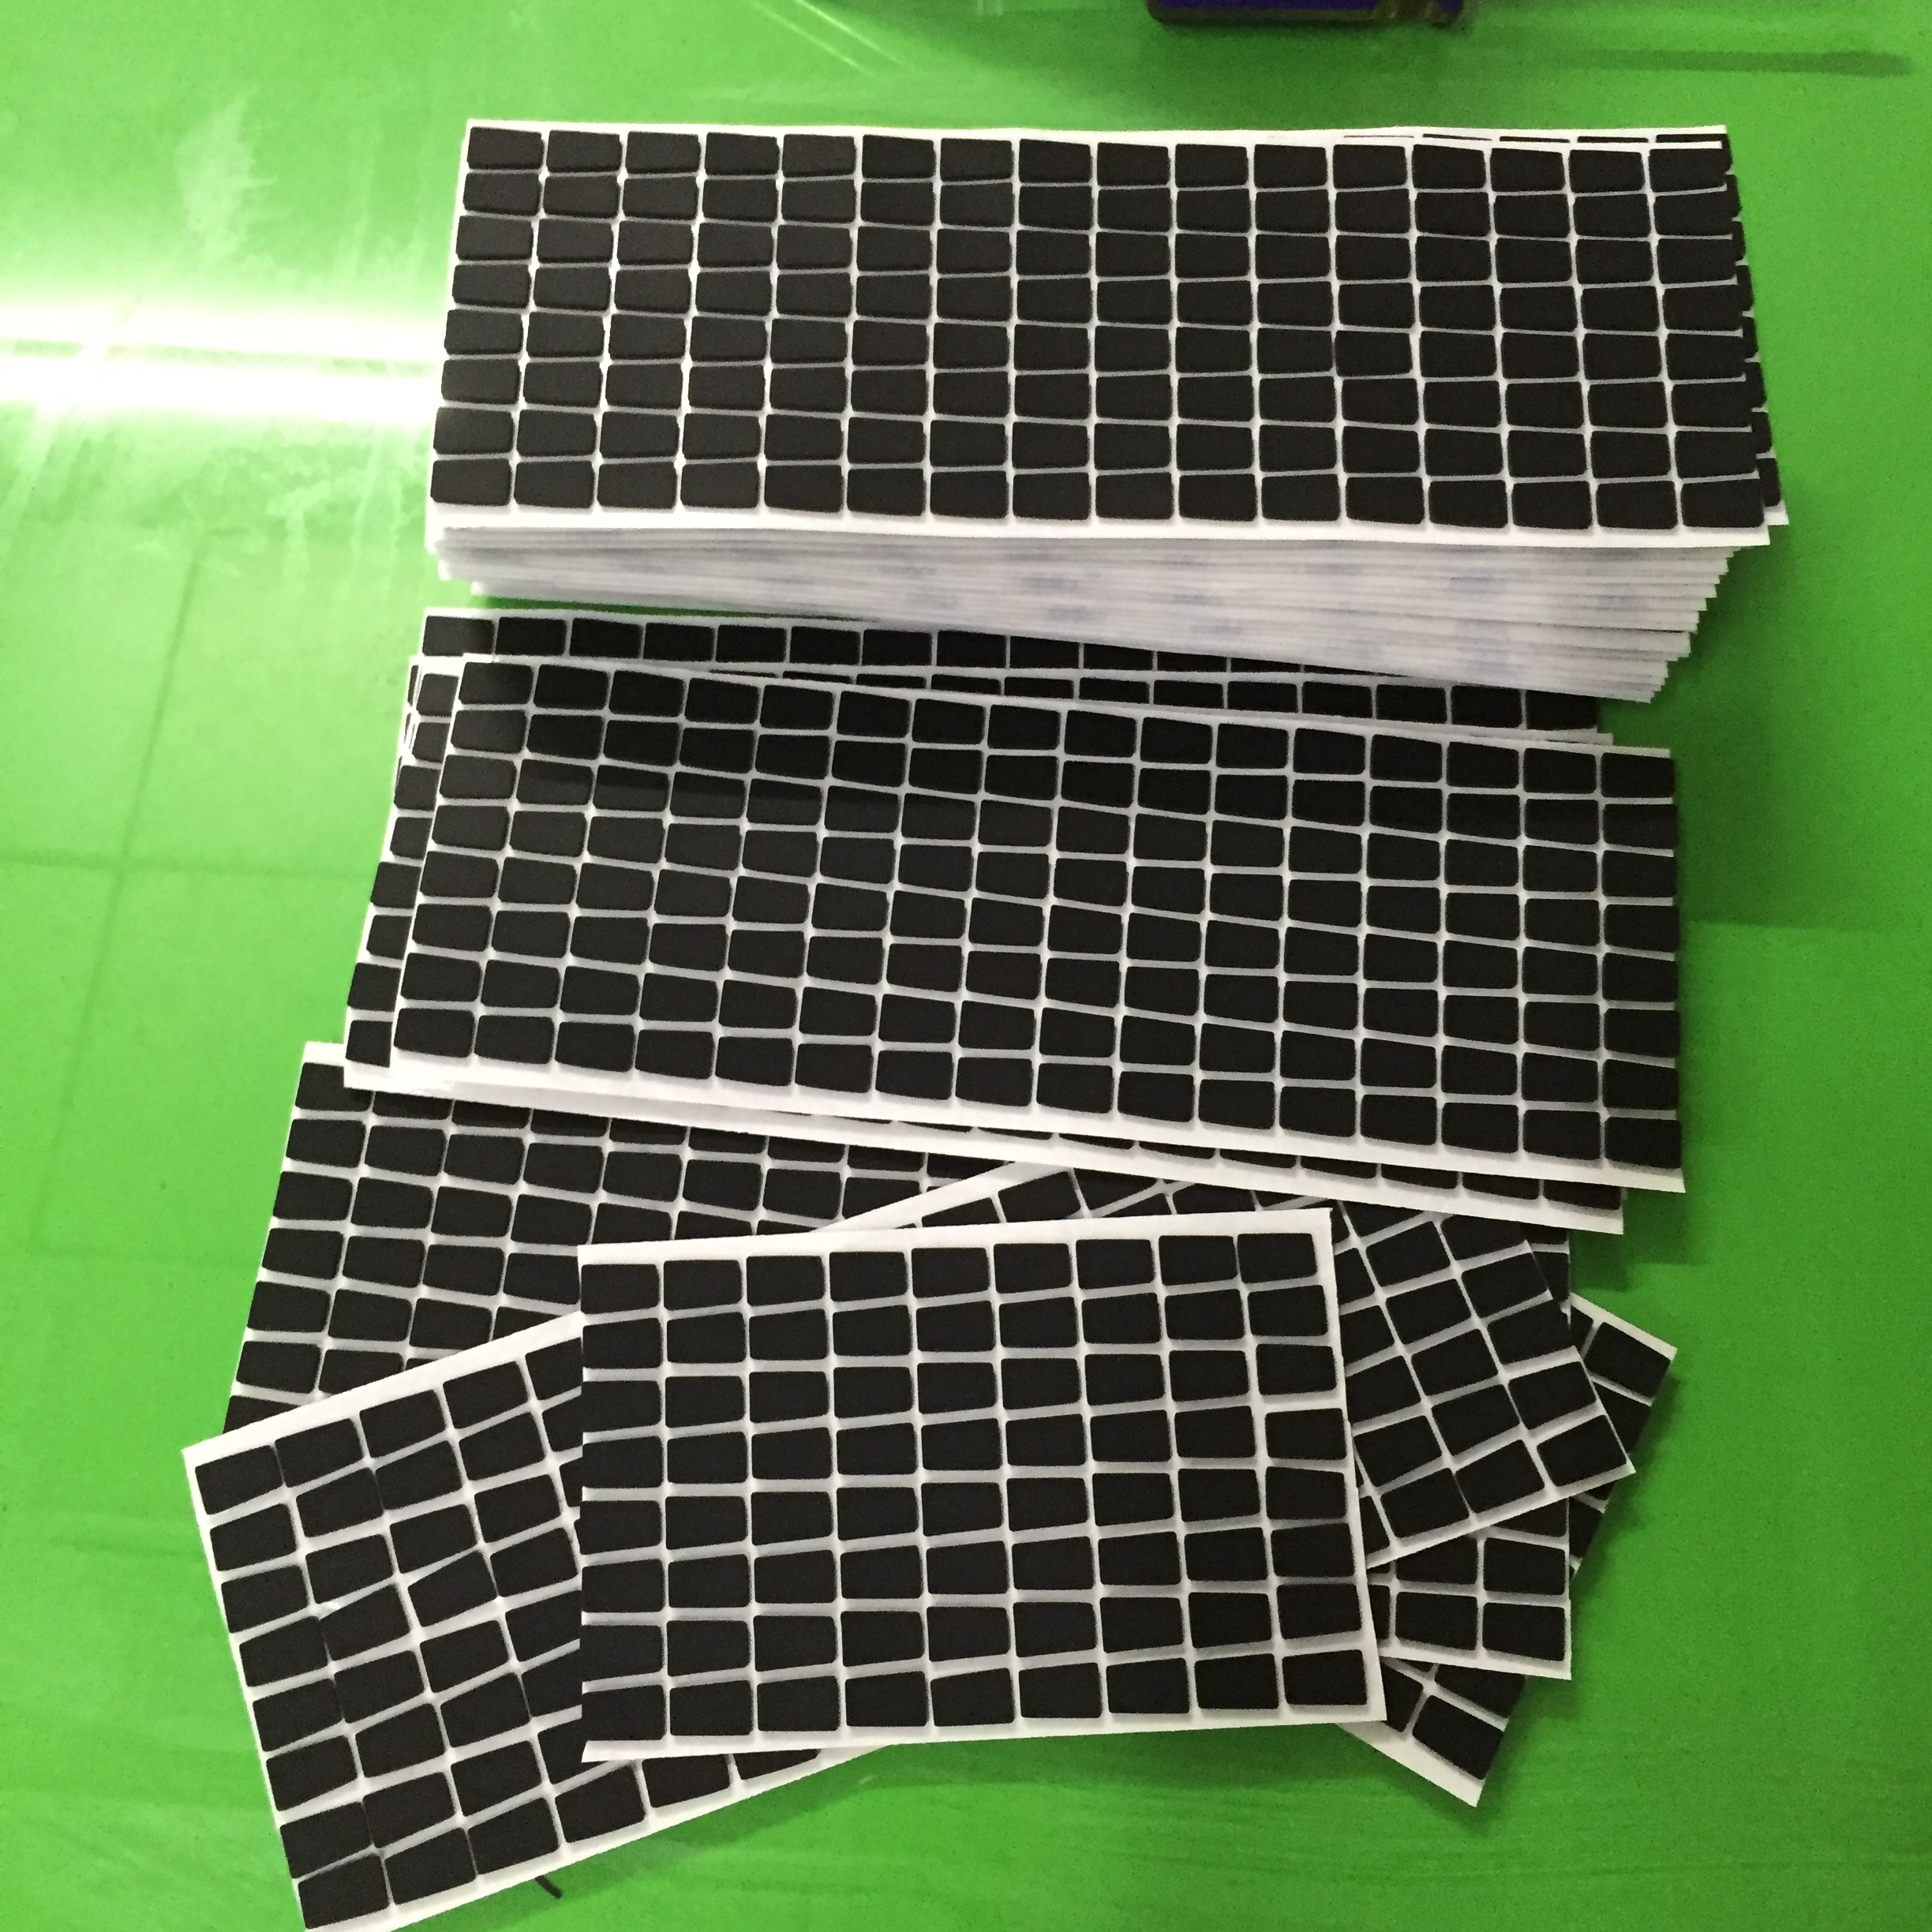 厂家直销硅胶垫片 定制硅胶垫 耐高温硅胶 硅胶制品加工 3M硅胶